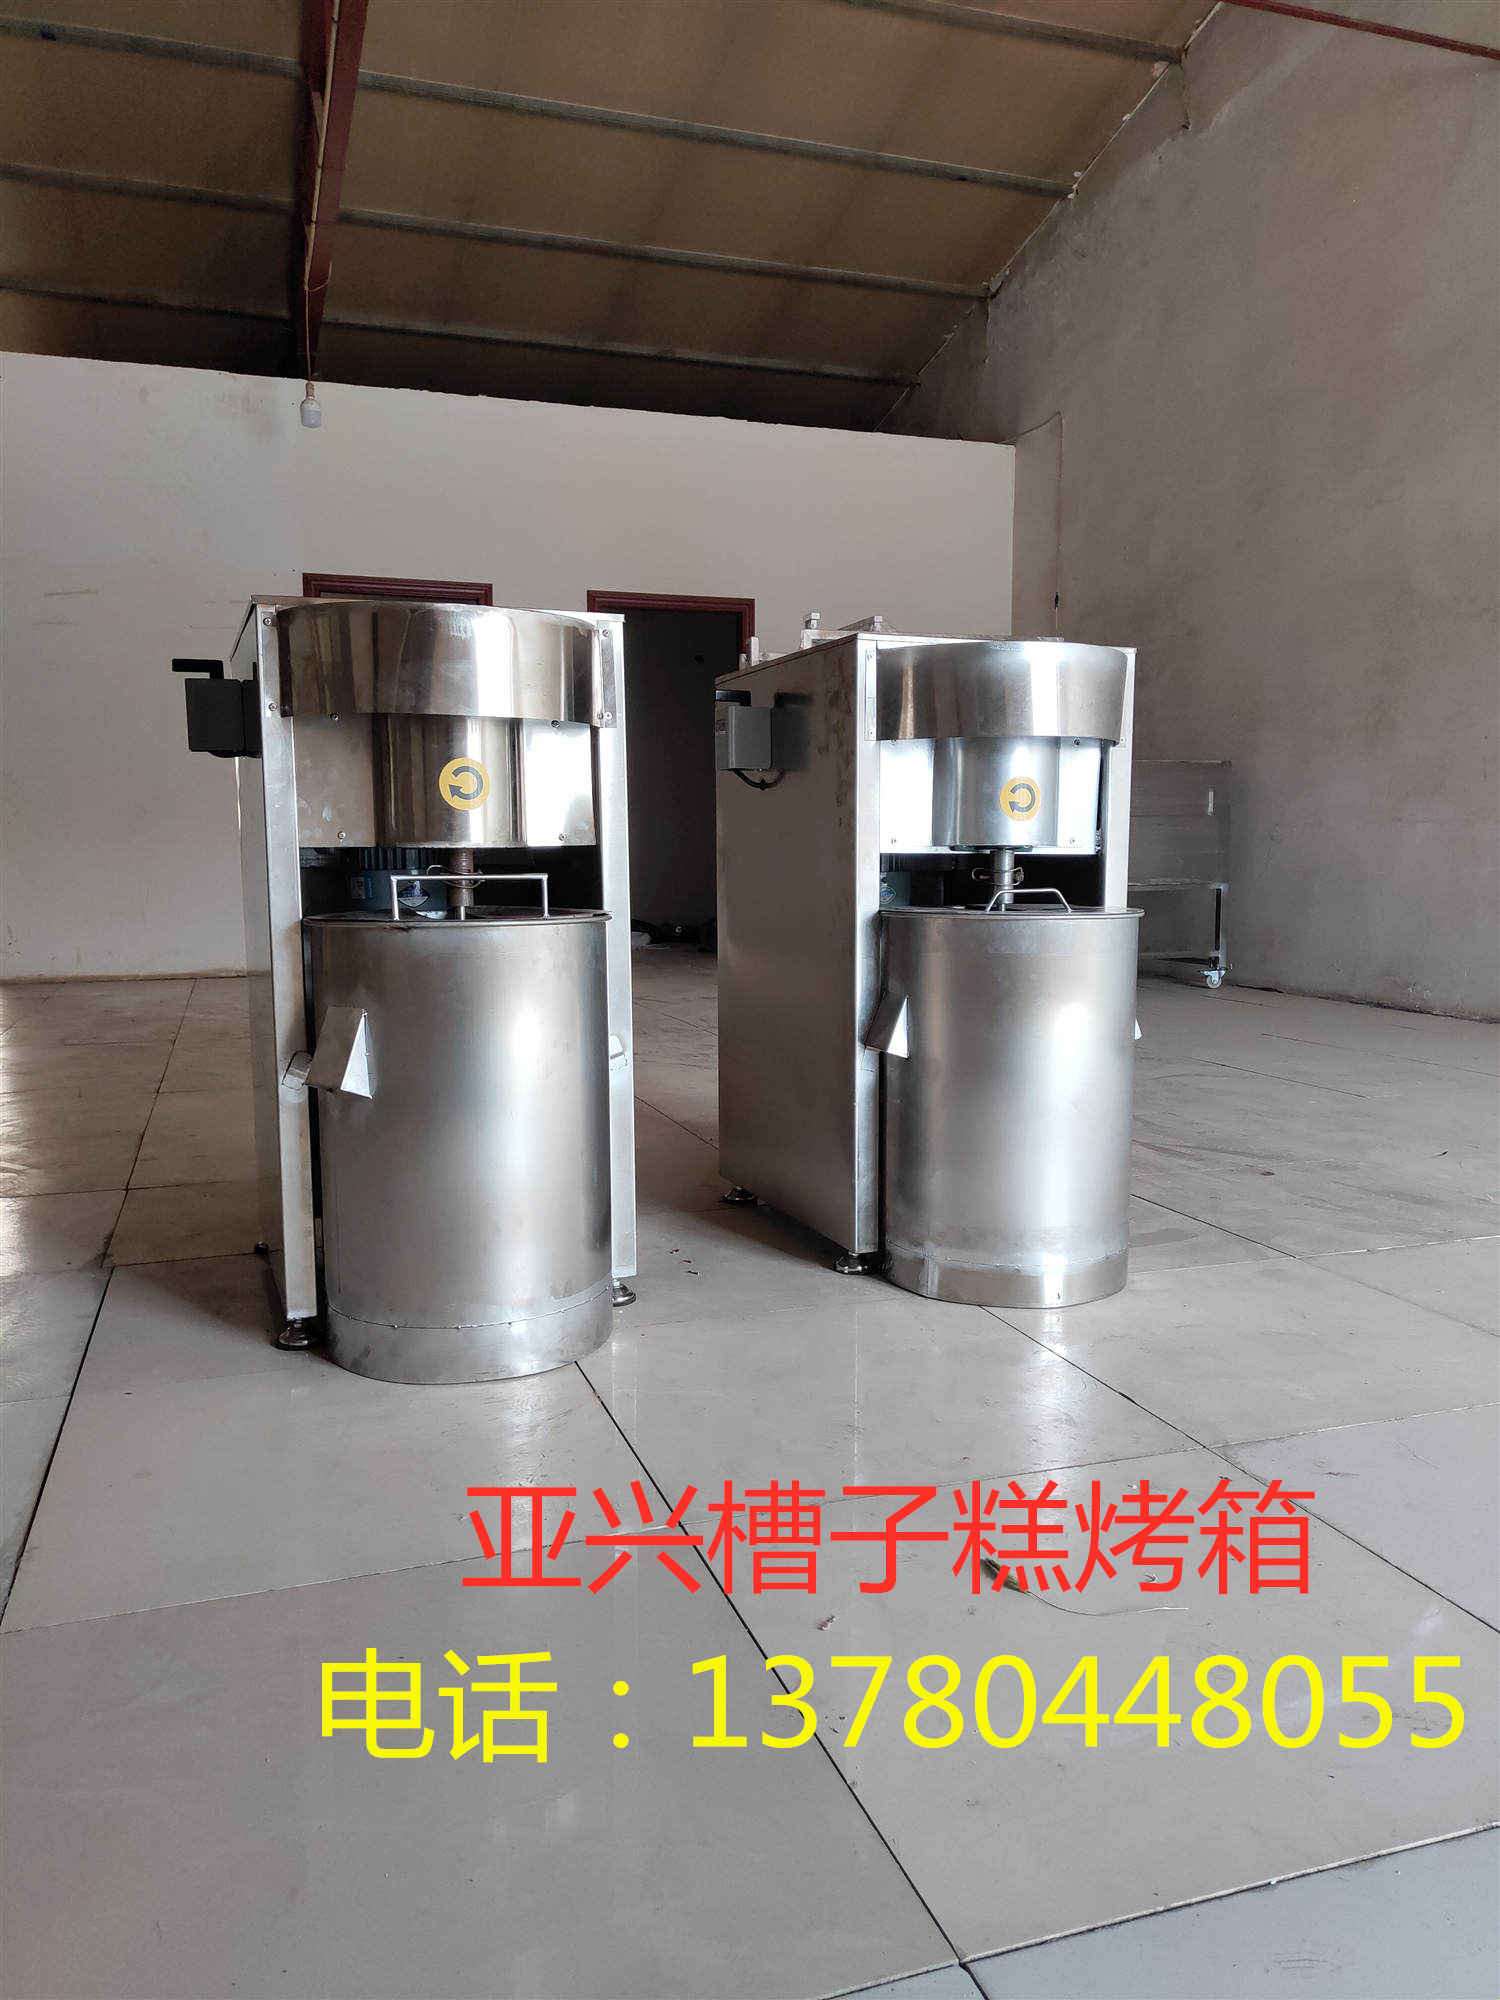 台湾风味YX190-II型亚兴蜂蜜槽子糕机器